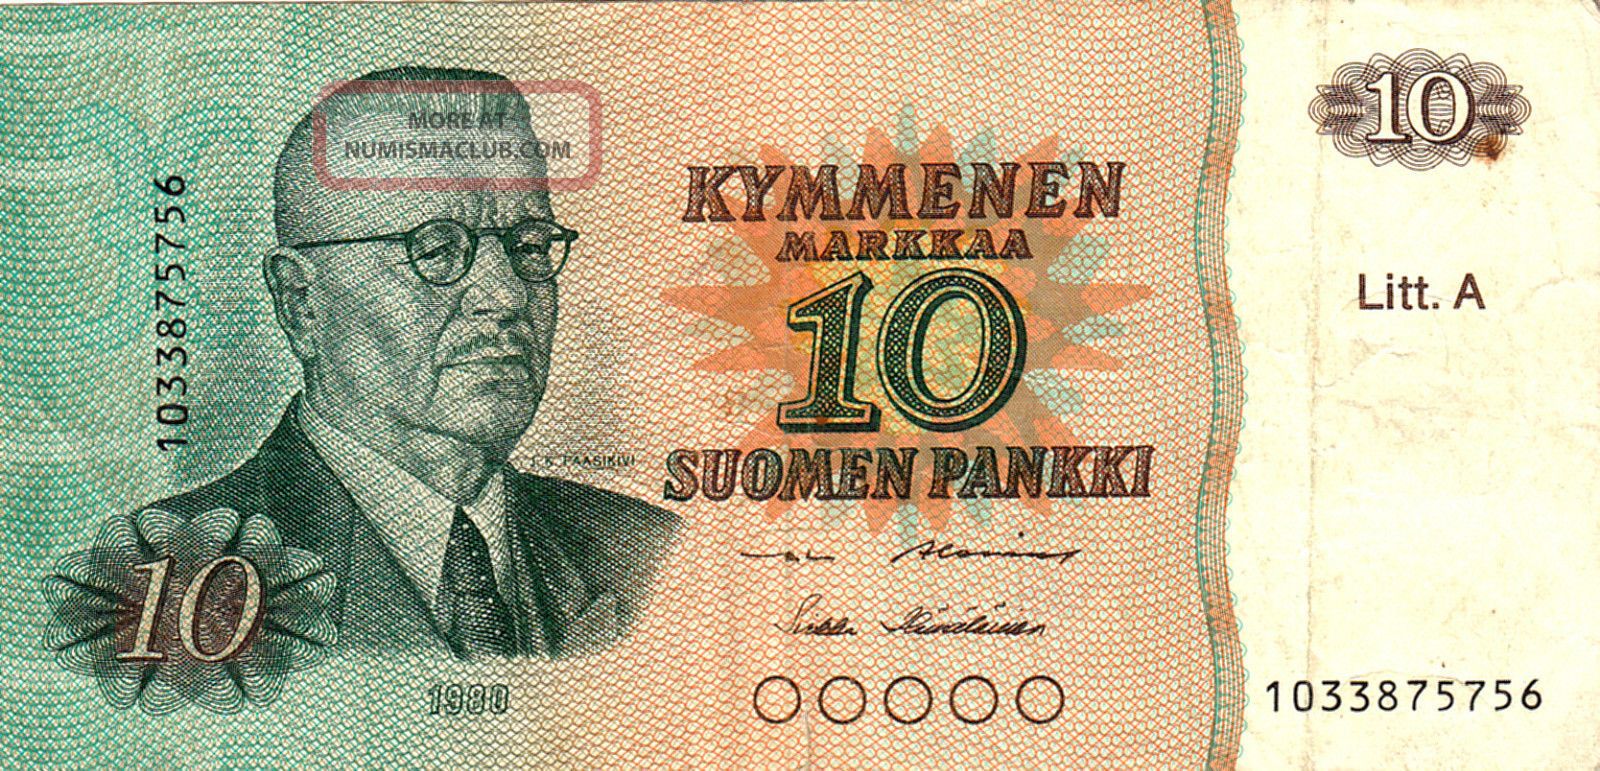 1980 Finland 10 Markkaa Note. Europe photo